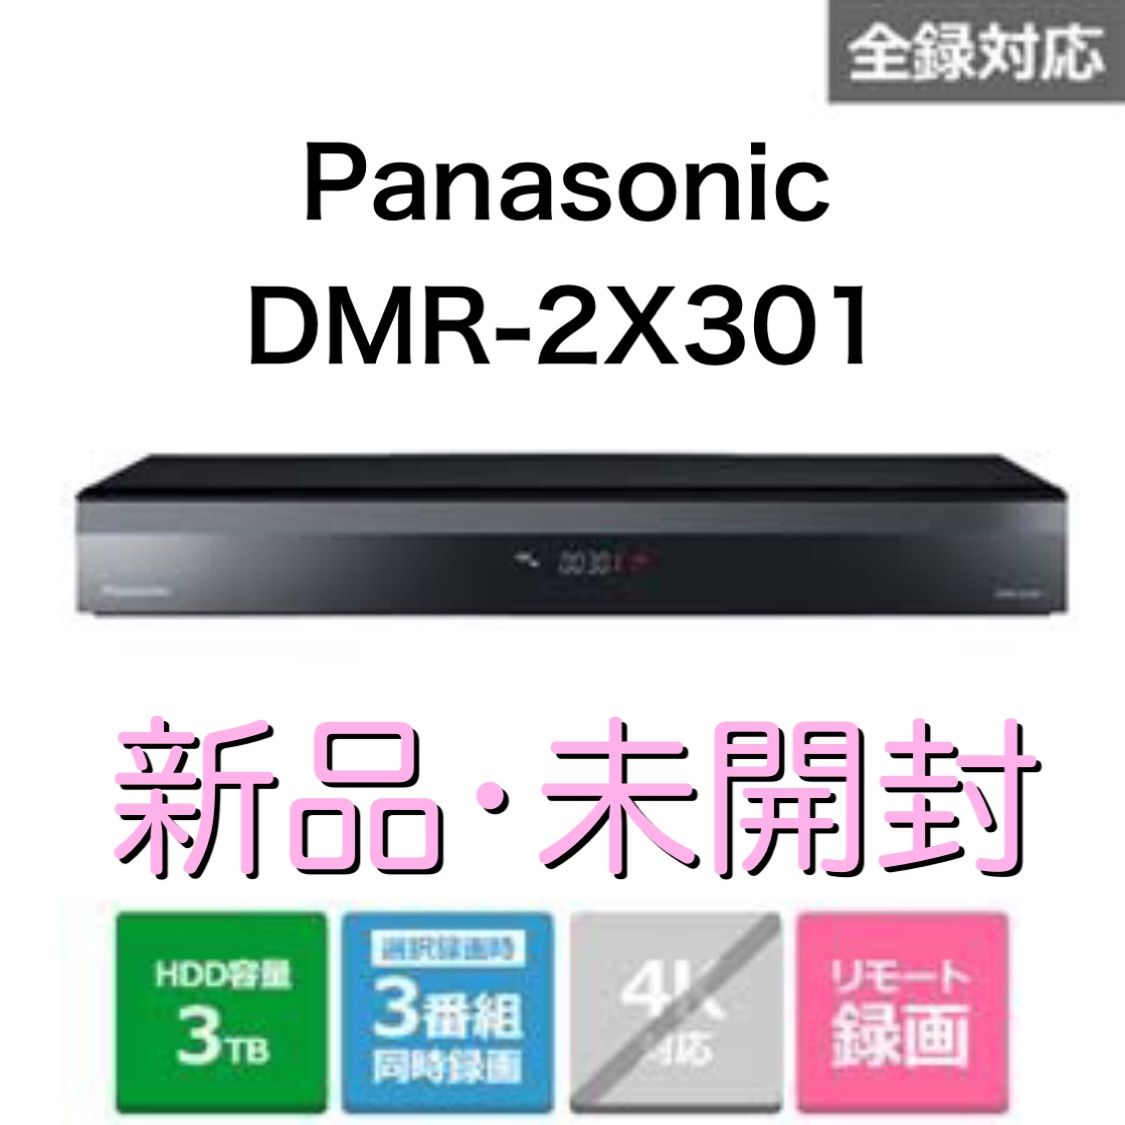 11/14まで価格 Panasonic DIGA 3TB DMR-2X301 - ブルーレイレコーダー